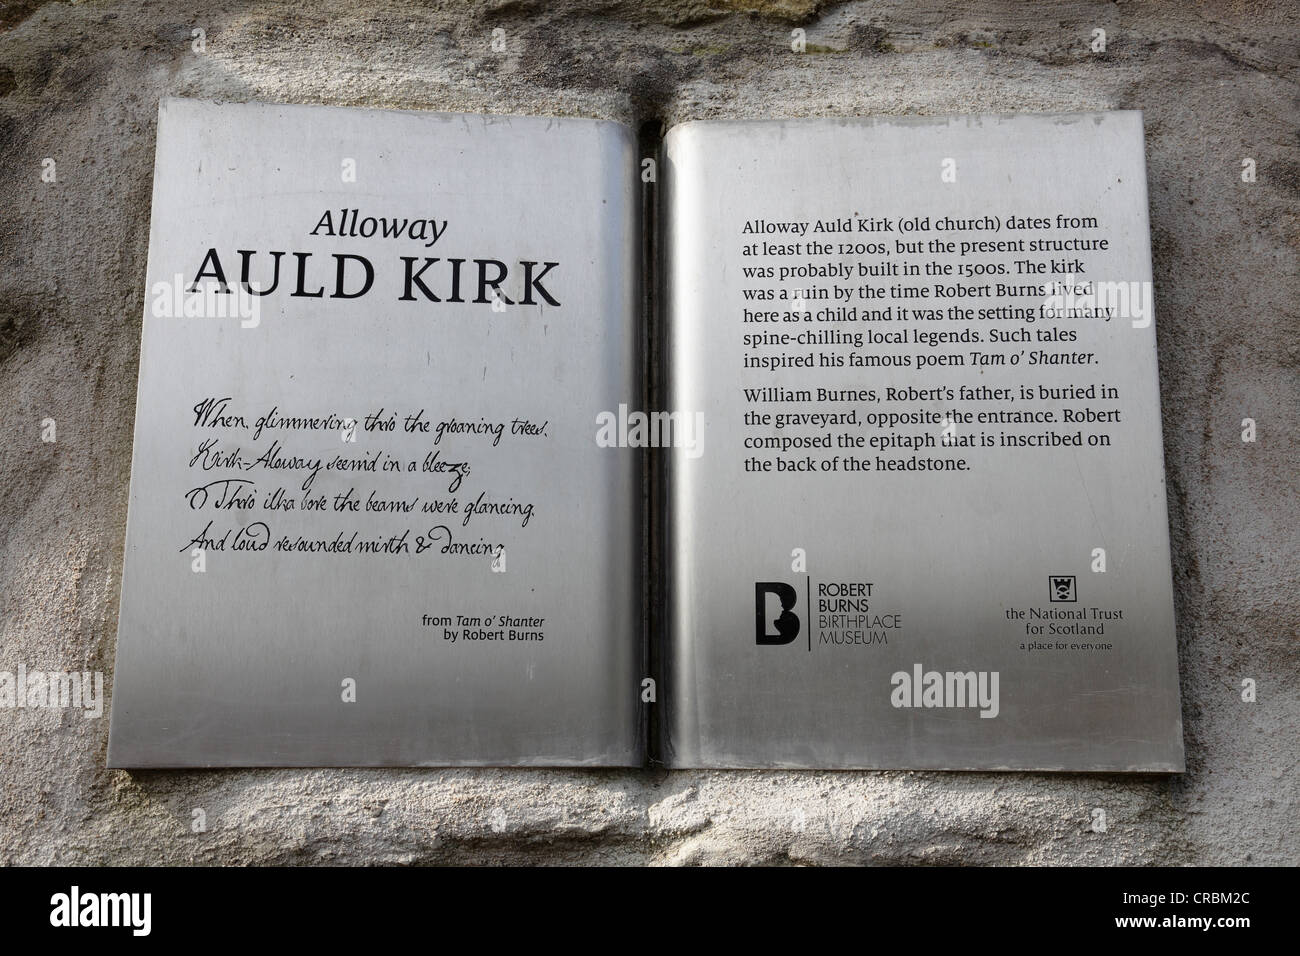 Alloway Auld Kirk, una placa con un extracto del poema de Robert Burns Tam o' Shanter, Alloway, Escocia, Ayrshire, Escocia, REINO UNIDO Foto de stock